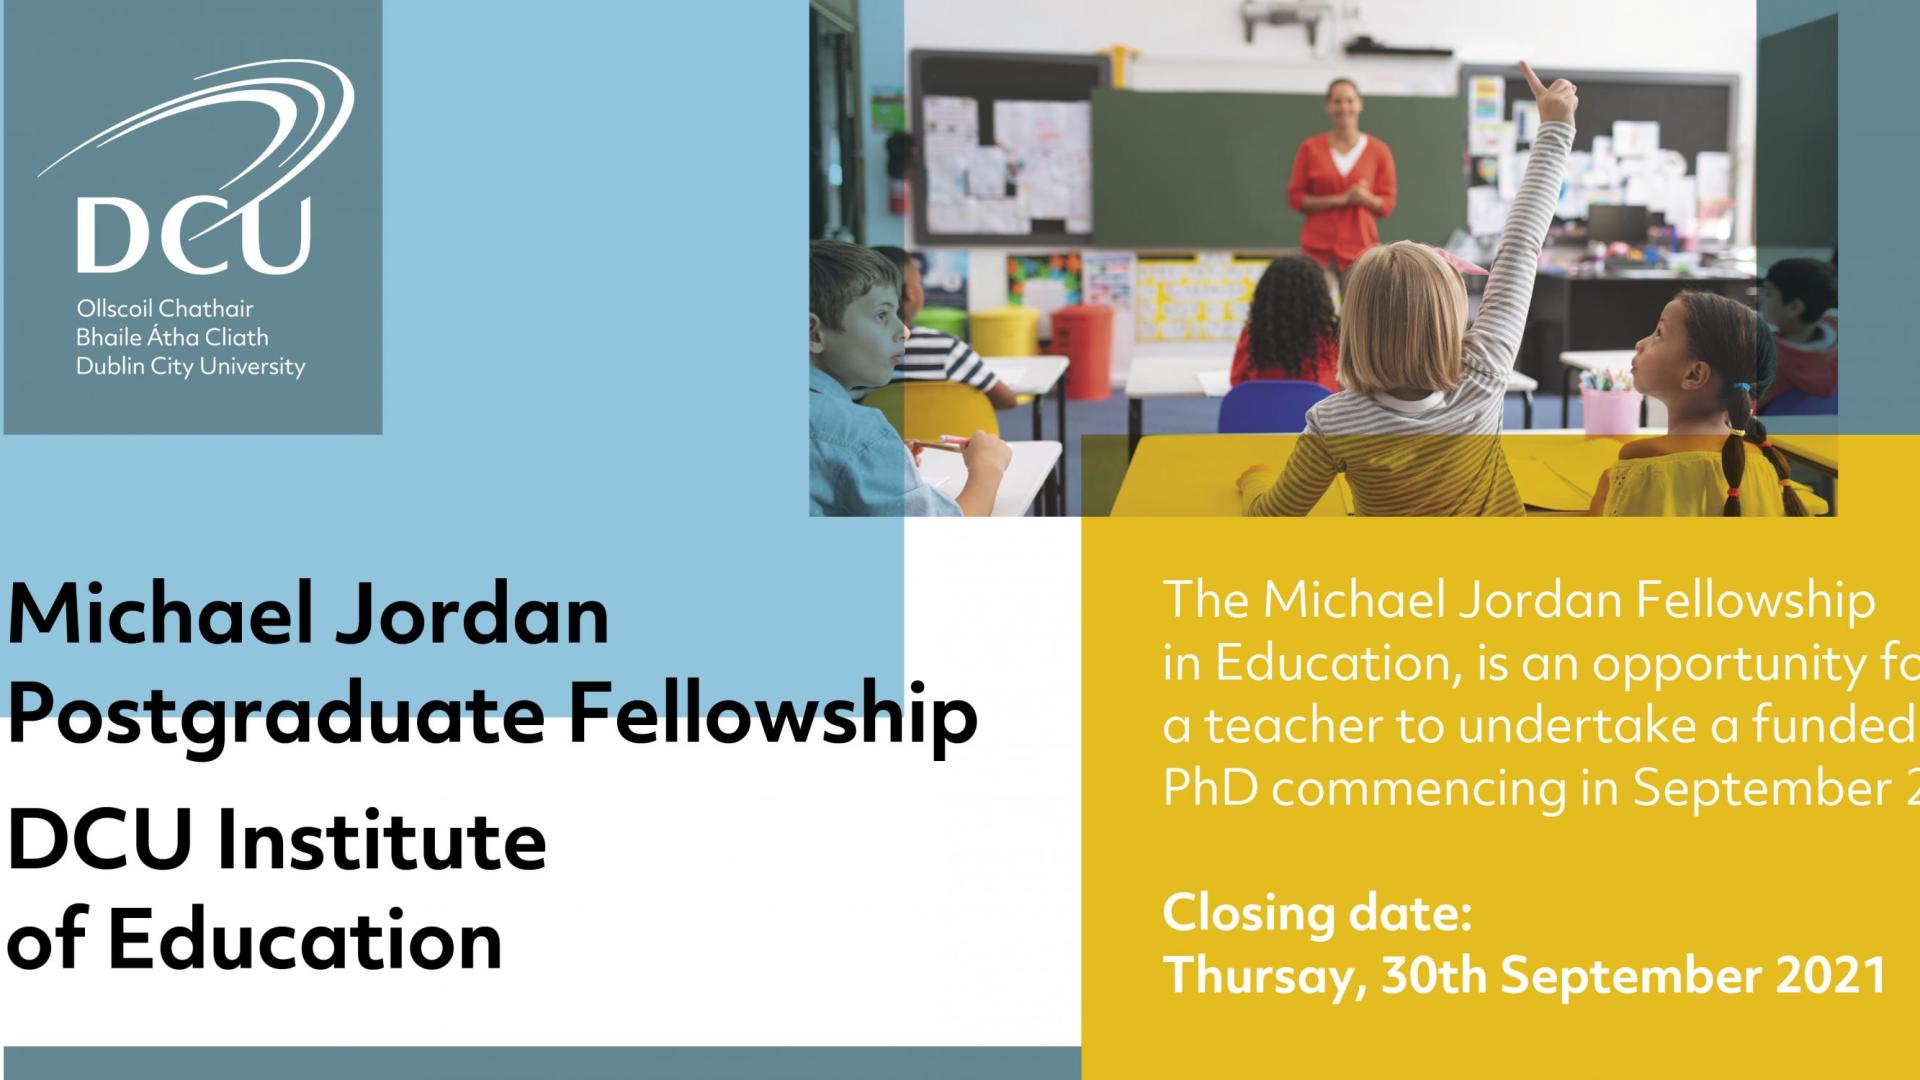 Michael Jordan Postgraduate Fellowship